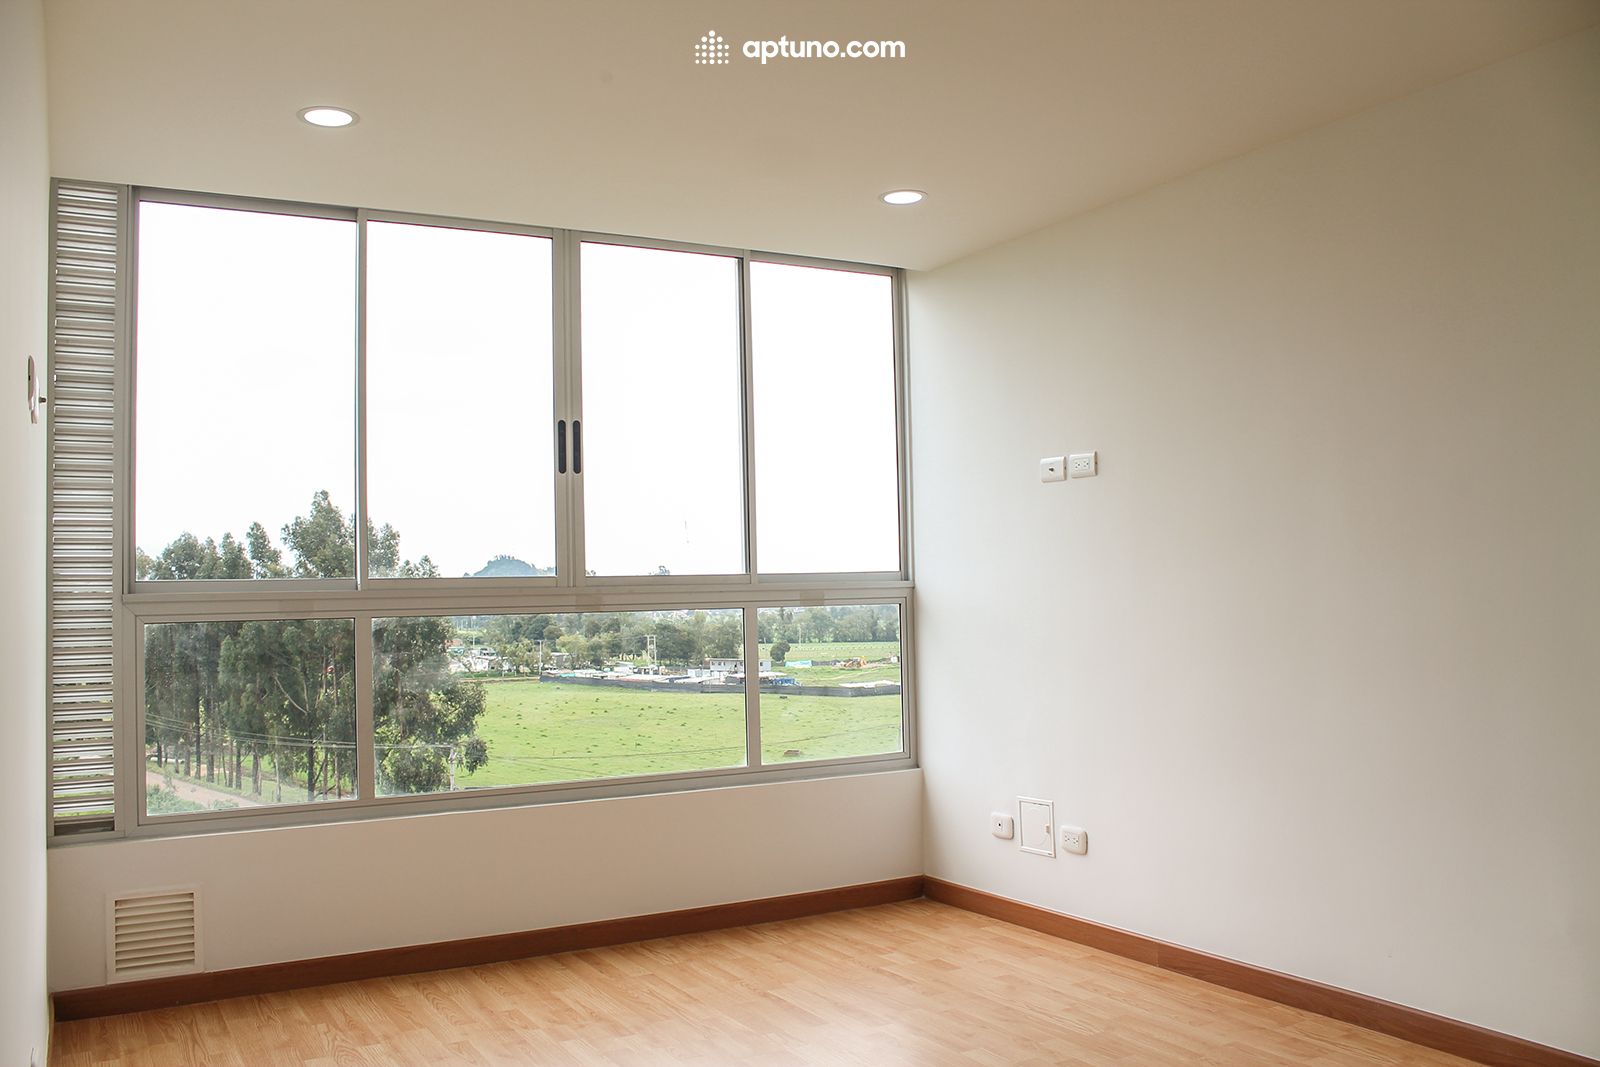 Apartamento en arriendo Zipaquirá 58 m² - $ 950.000